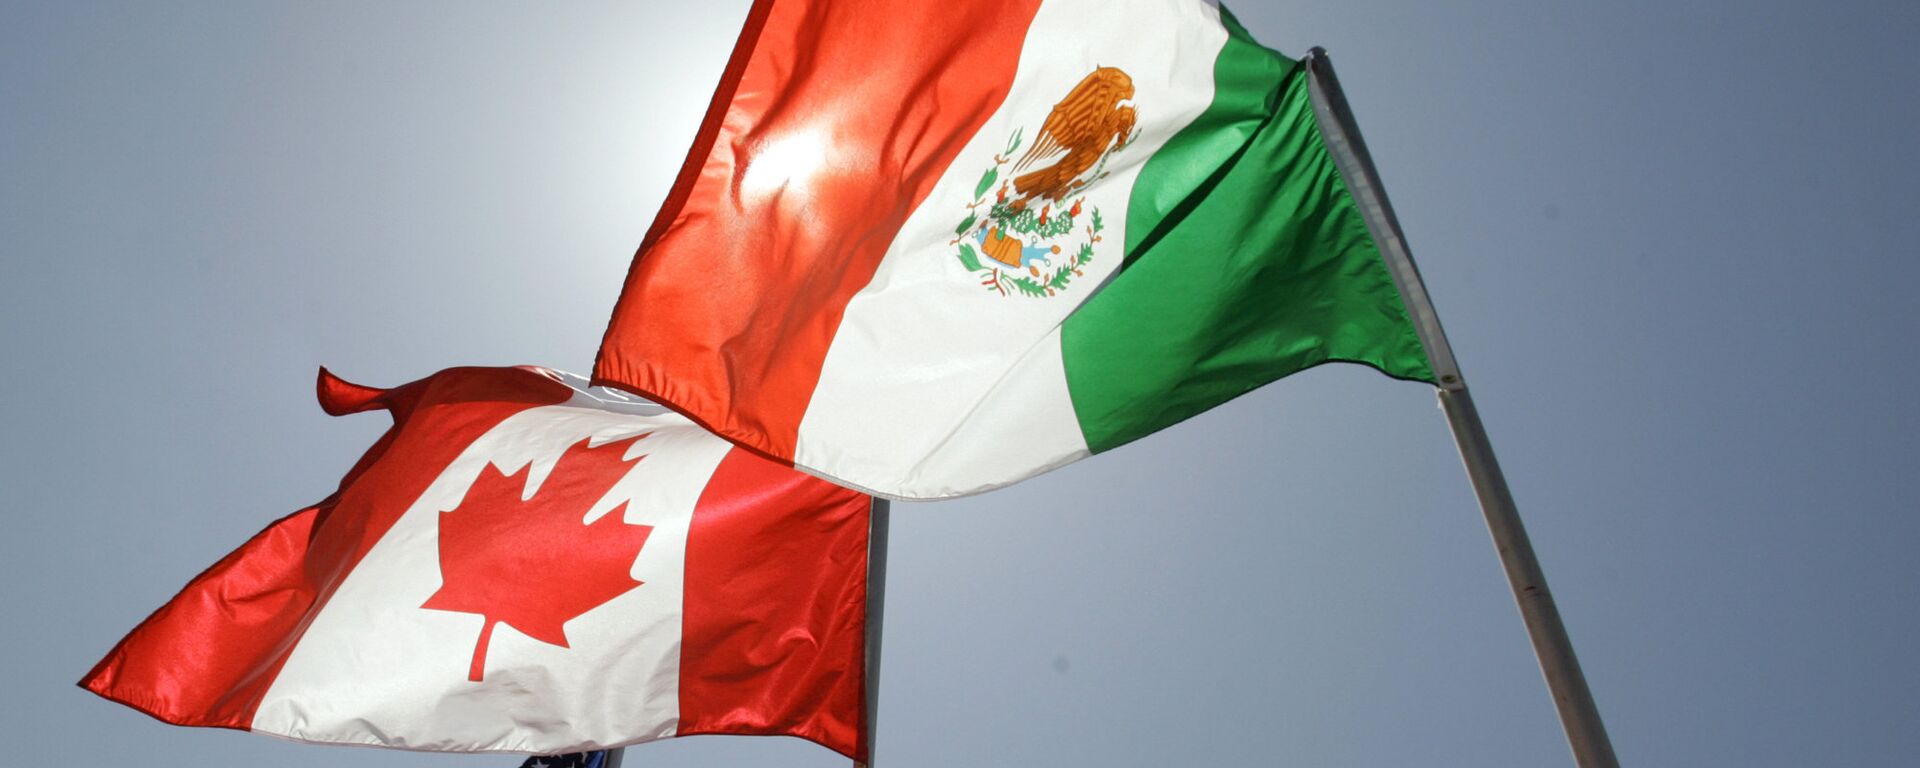 Las banderas de EEUU, Canadá y México - Sputnik Mundo, 1920, 01.07.2020